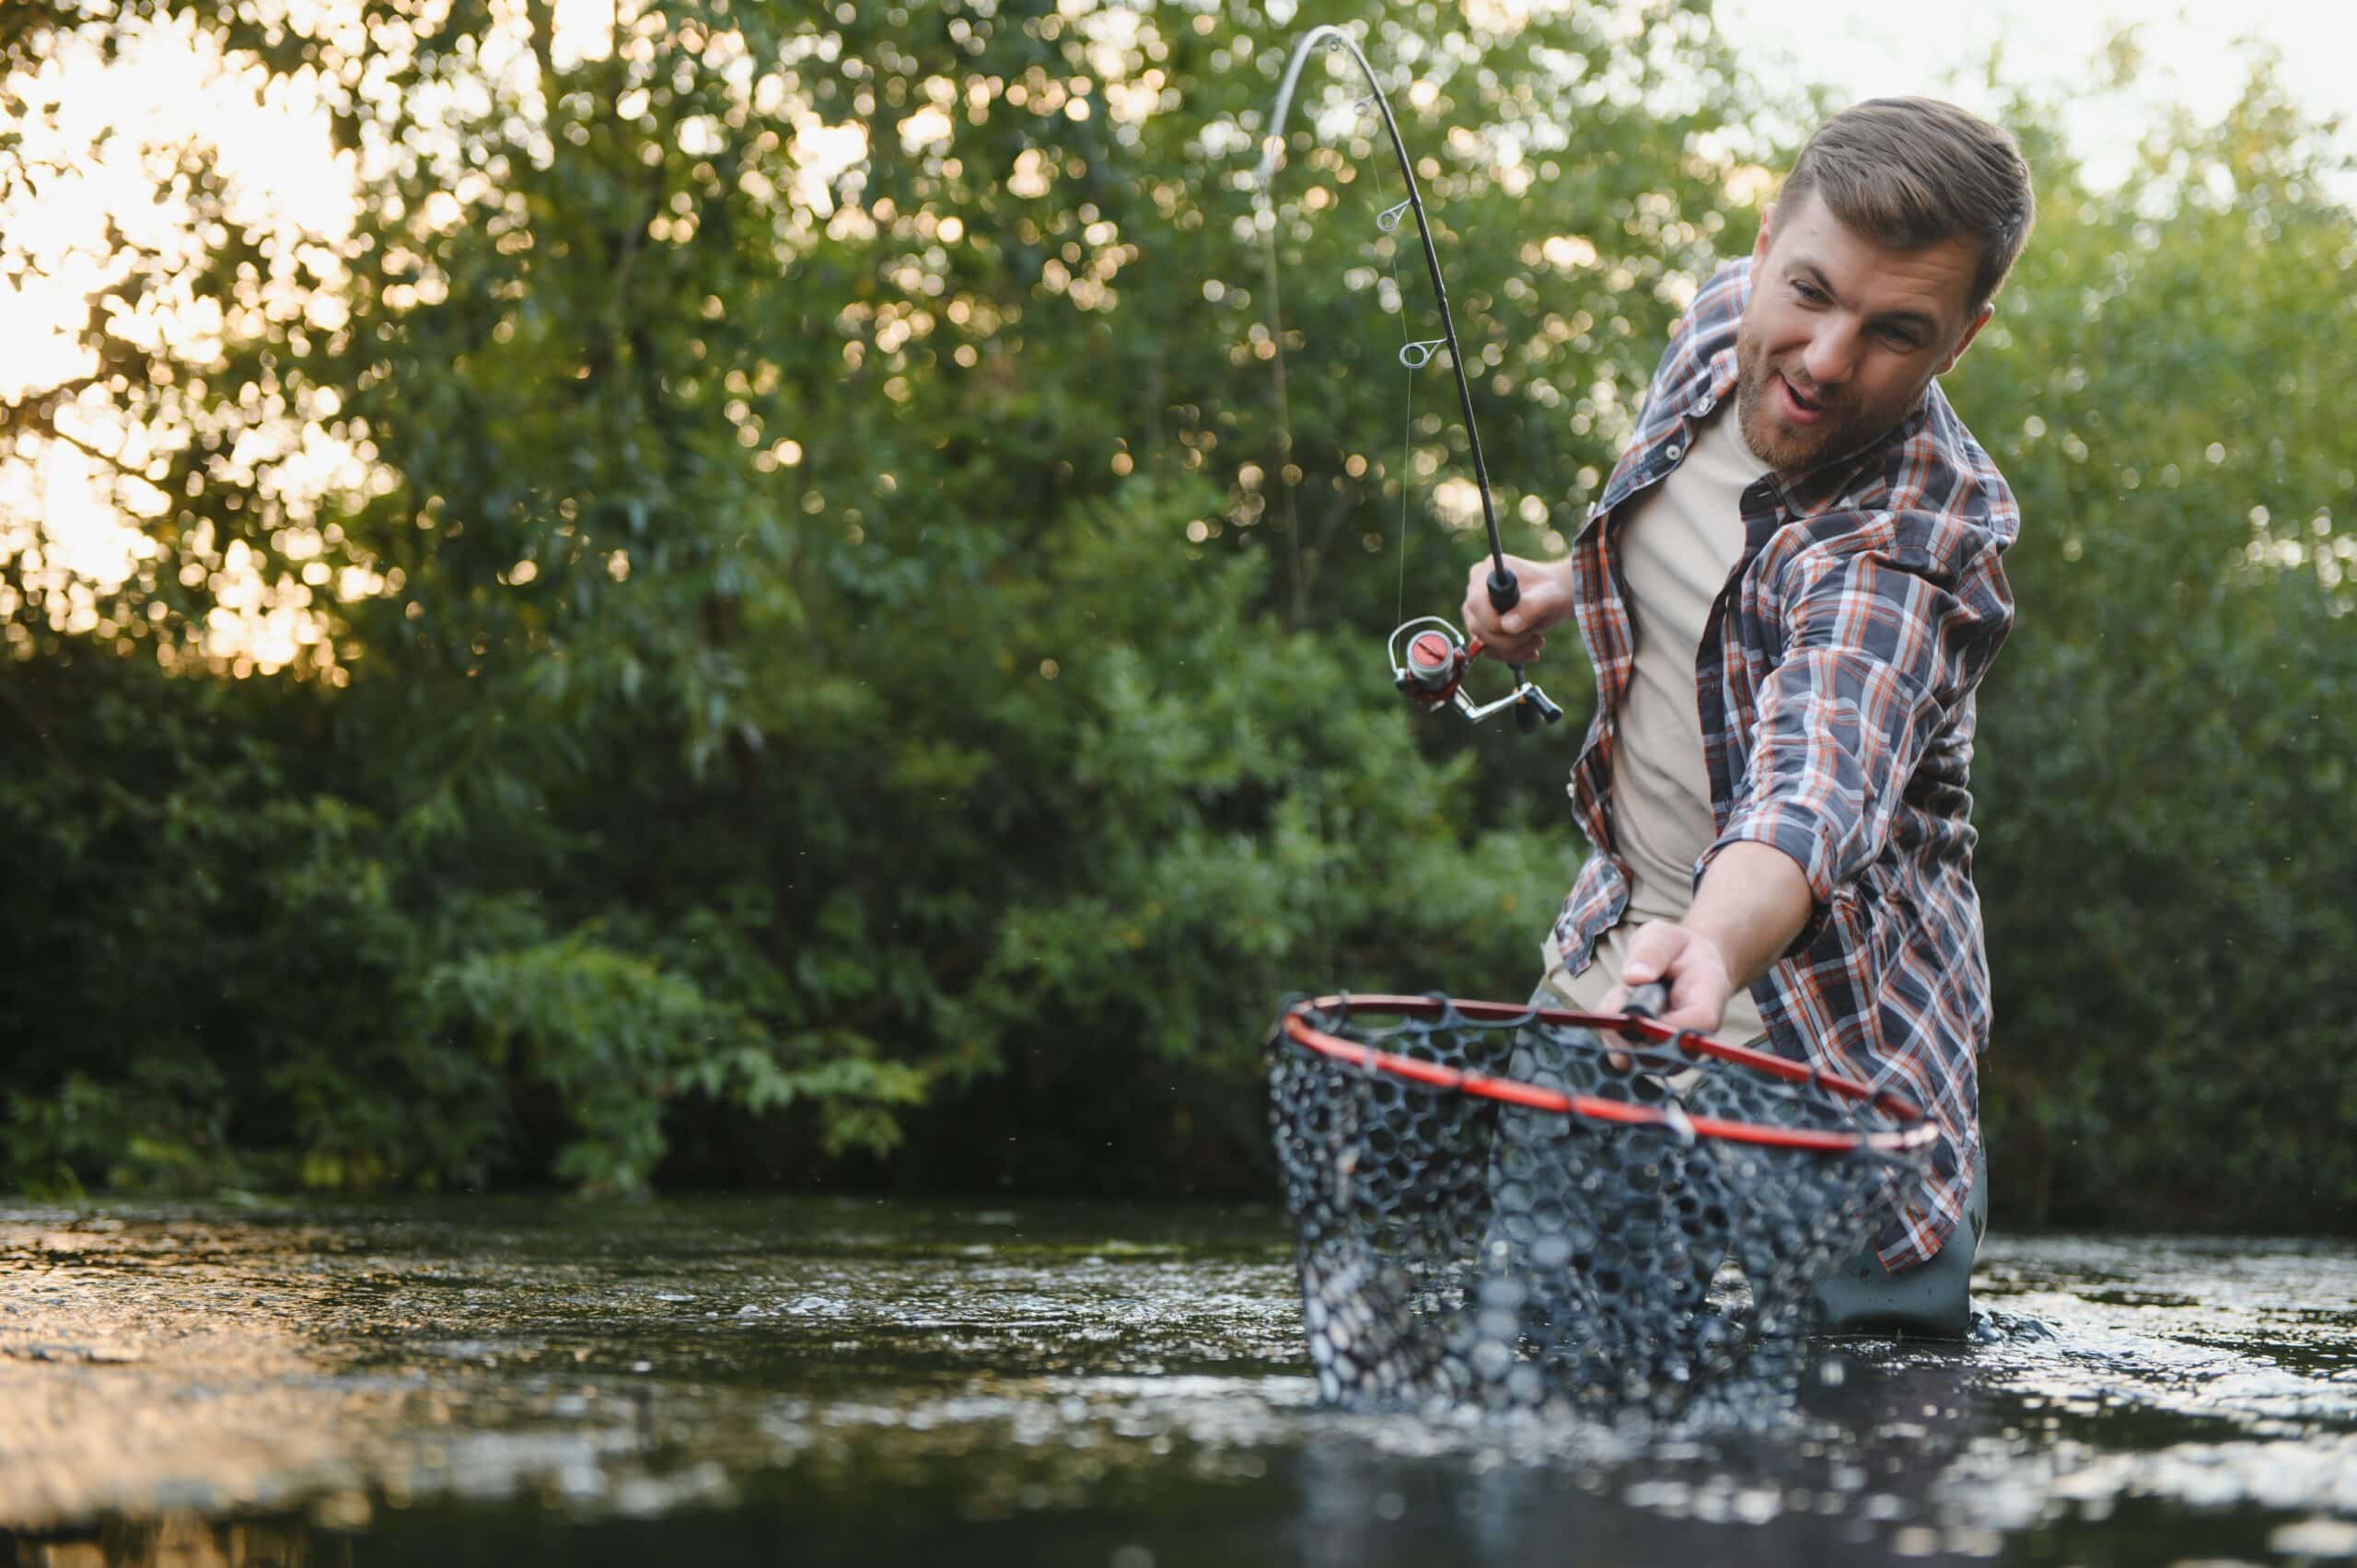 fanatic4fishing.com : Should you use a bobber when trout fishing?